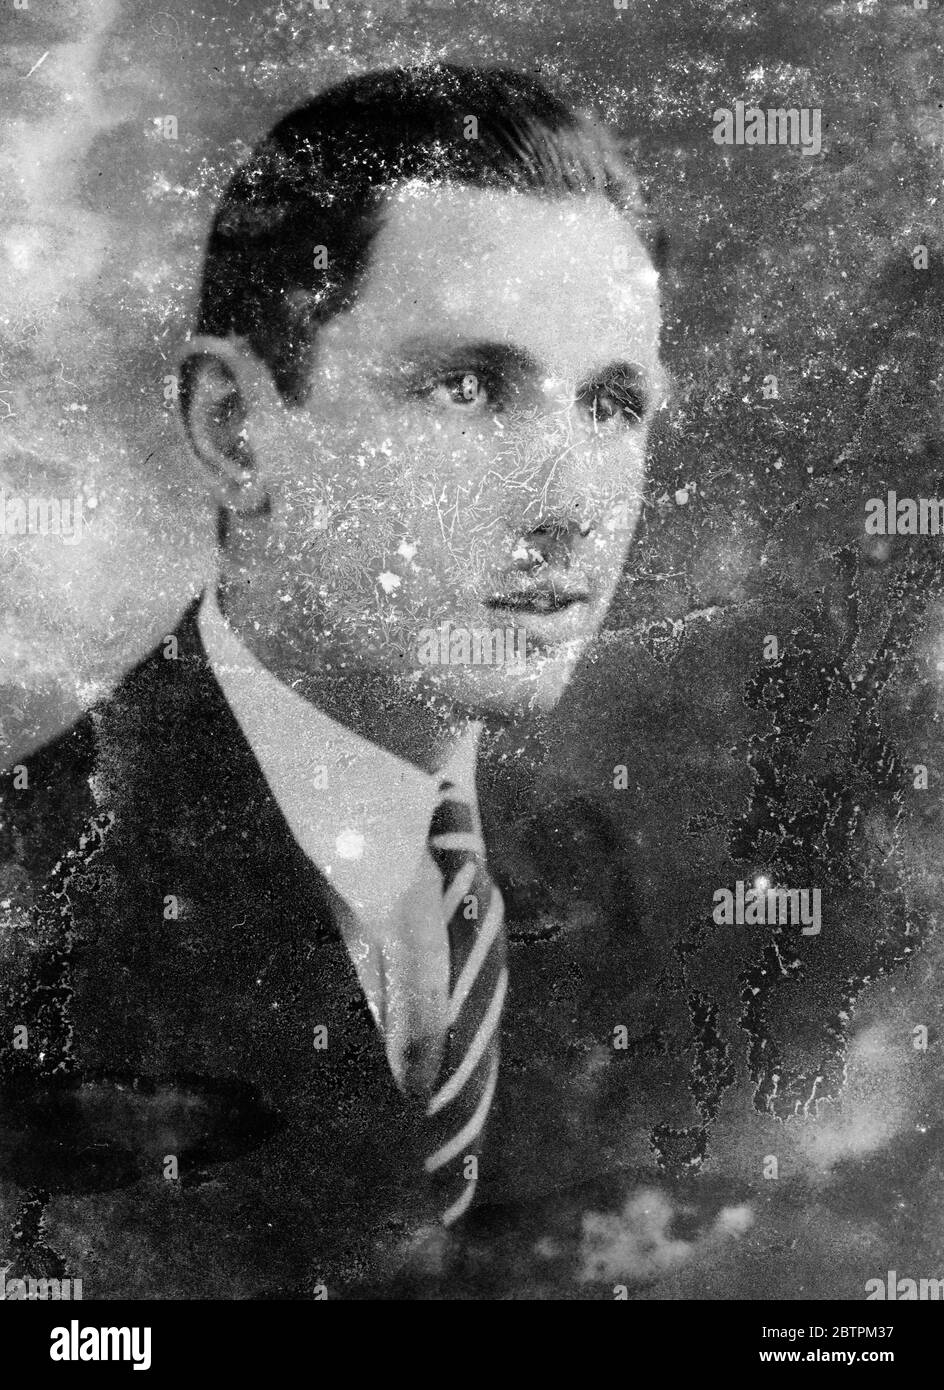 Victor William Green de la avenida 7 Eastern Avenue Shoreham informó ahogado el 6 de julio de 1936 Foto de stock